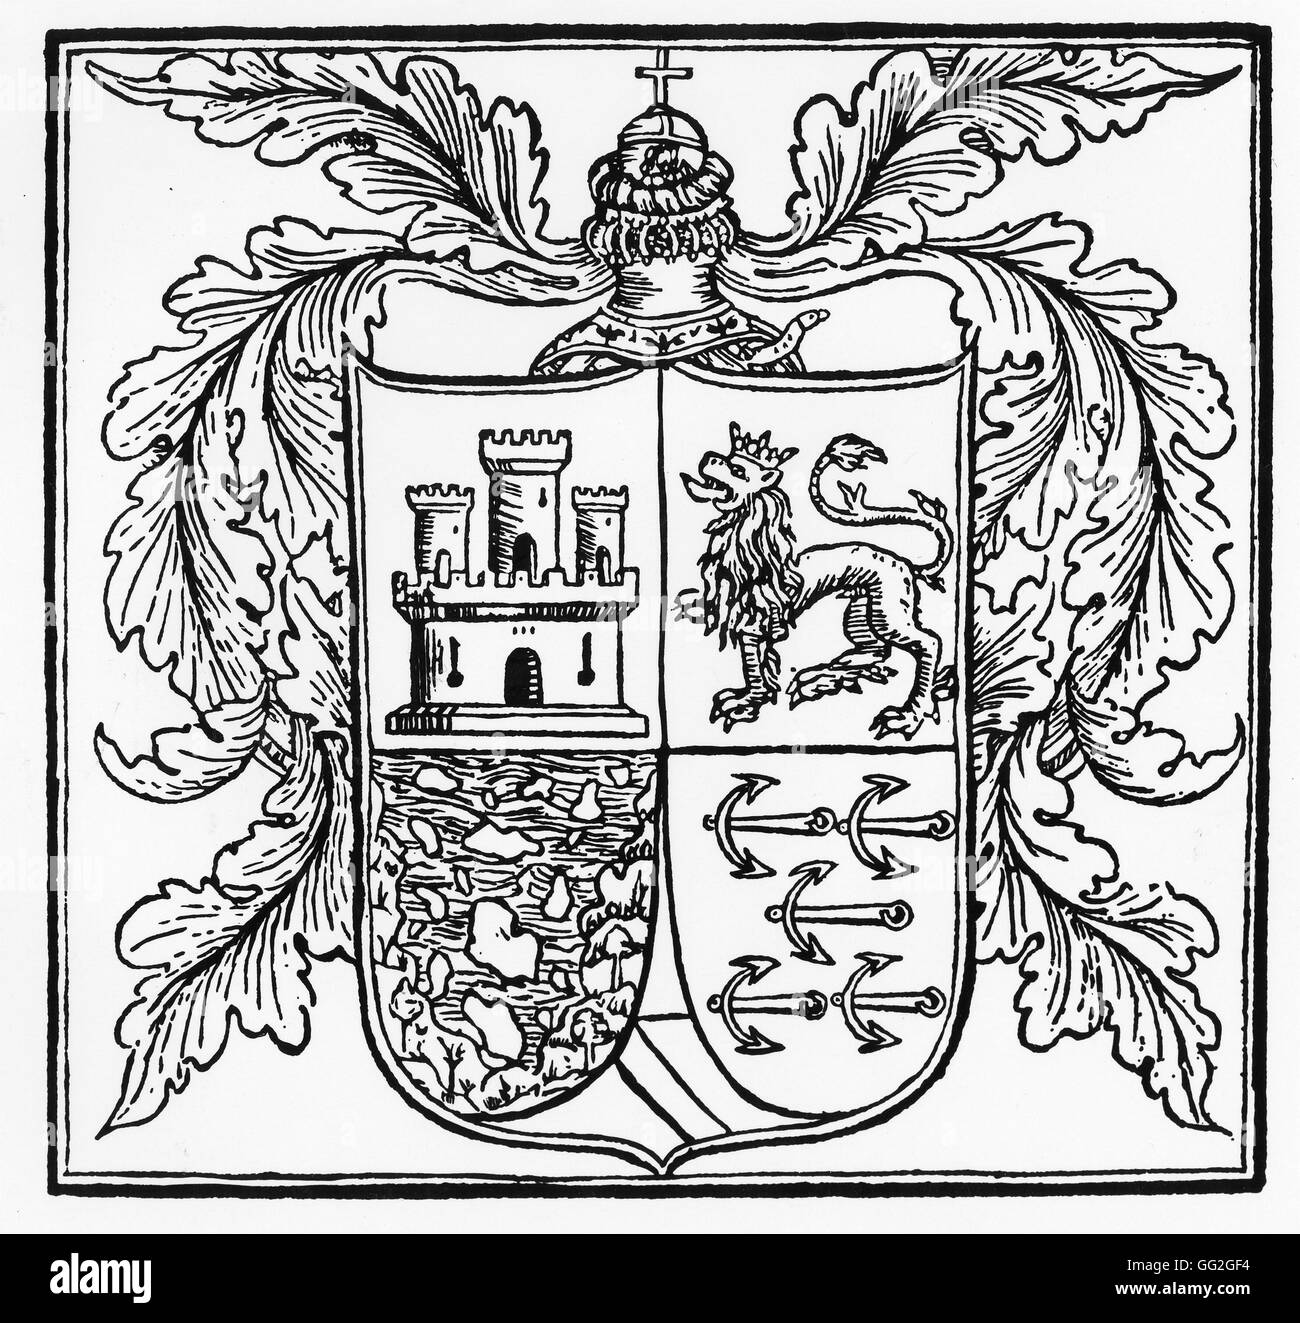 Christopher Columbus' armoiries en 1502 1er et 2e trimestres, les frais royale de Castille et Leon (château et lion) 3e trimestre, des îles dans une mer ondulée 4e trimestre, la coutume de sa famille d'armes Gravure Collection privée Banque D'Images